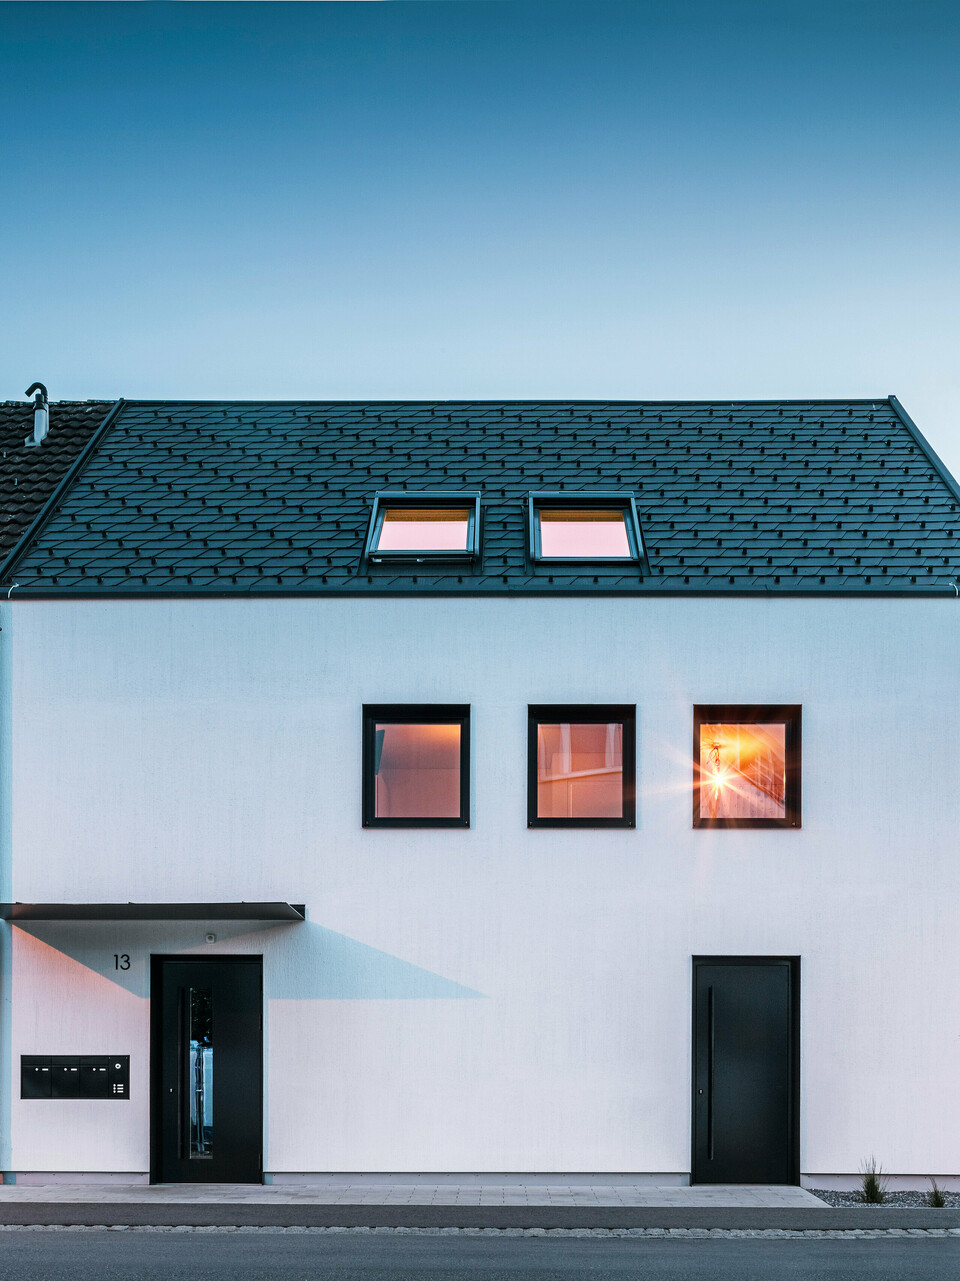 Moderne Mehrfamilienhausfassade mit PREFA Dachschindeln DS19 und Prefalz in Schwarz am Bodensee in Österreich. Das Gebäude hat eine klare Zweiteilung mit einem hölzernen Anbau auf der linken Seite und einem verputzten Hauptteil auf der rechten Seite. Das Dach zeigt die charakteristische dunkle Schindeldeckung und es gibt mehrere rechteckige Fenster, die im warmen Abendlicht spiegeln.